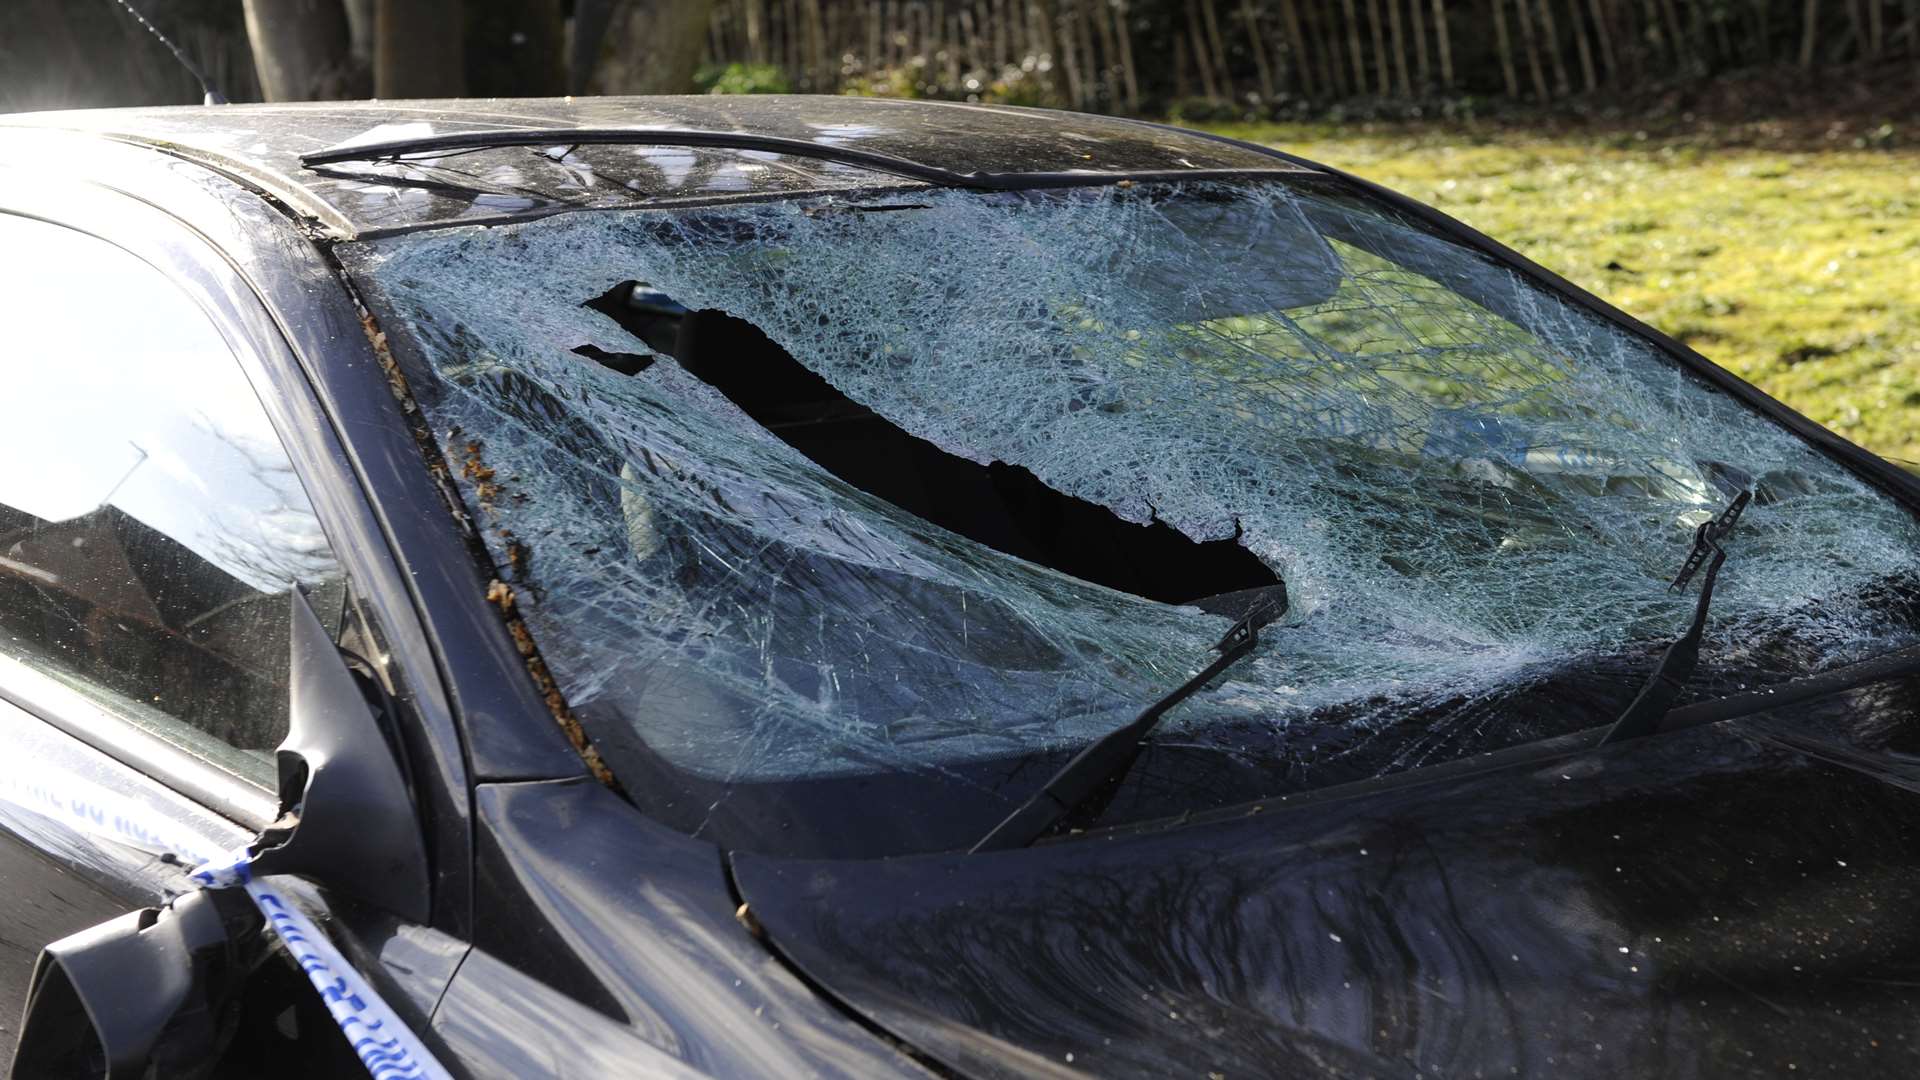 A car damaged by a falling tree in Walmer near Deal